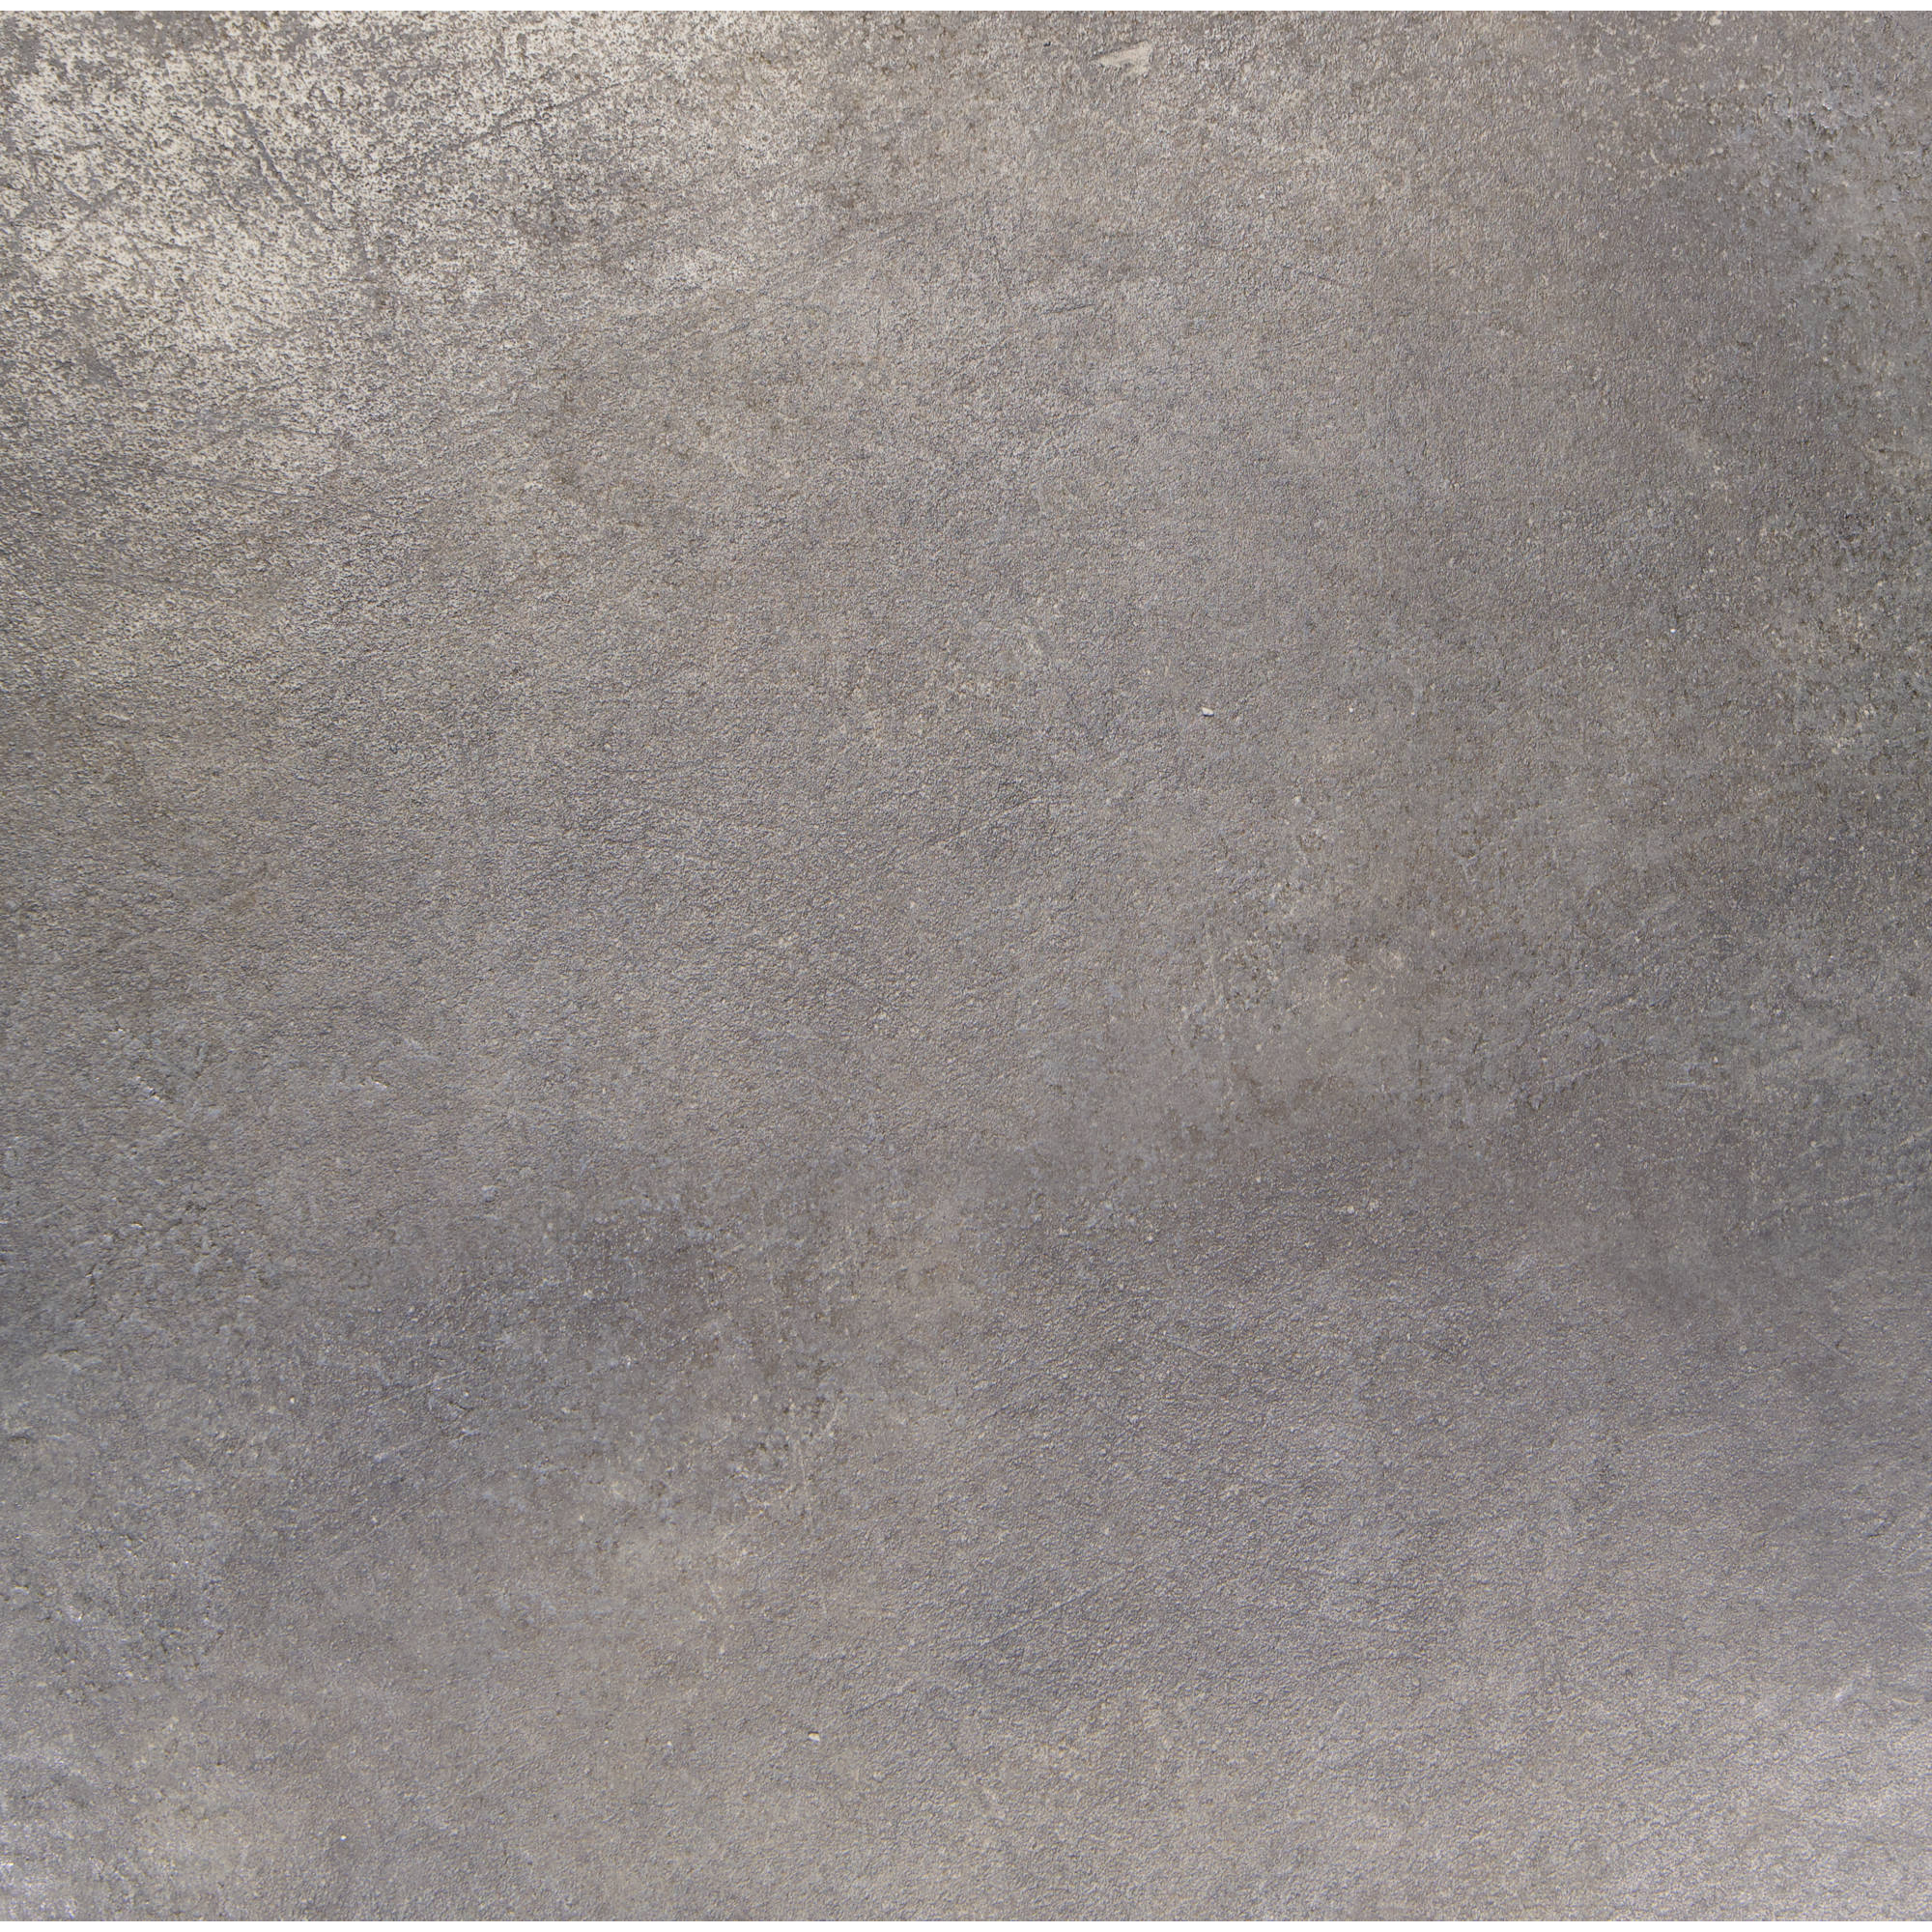 Bodenfliese 'Metall' grau 60 x 60 cm